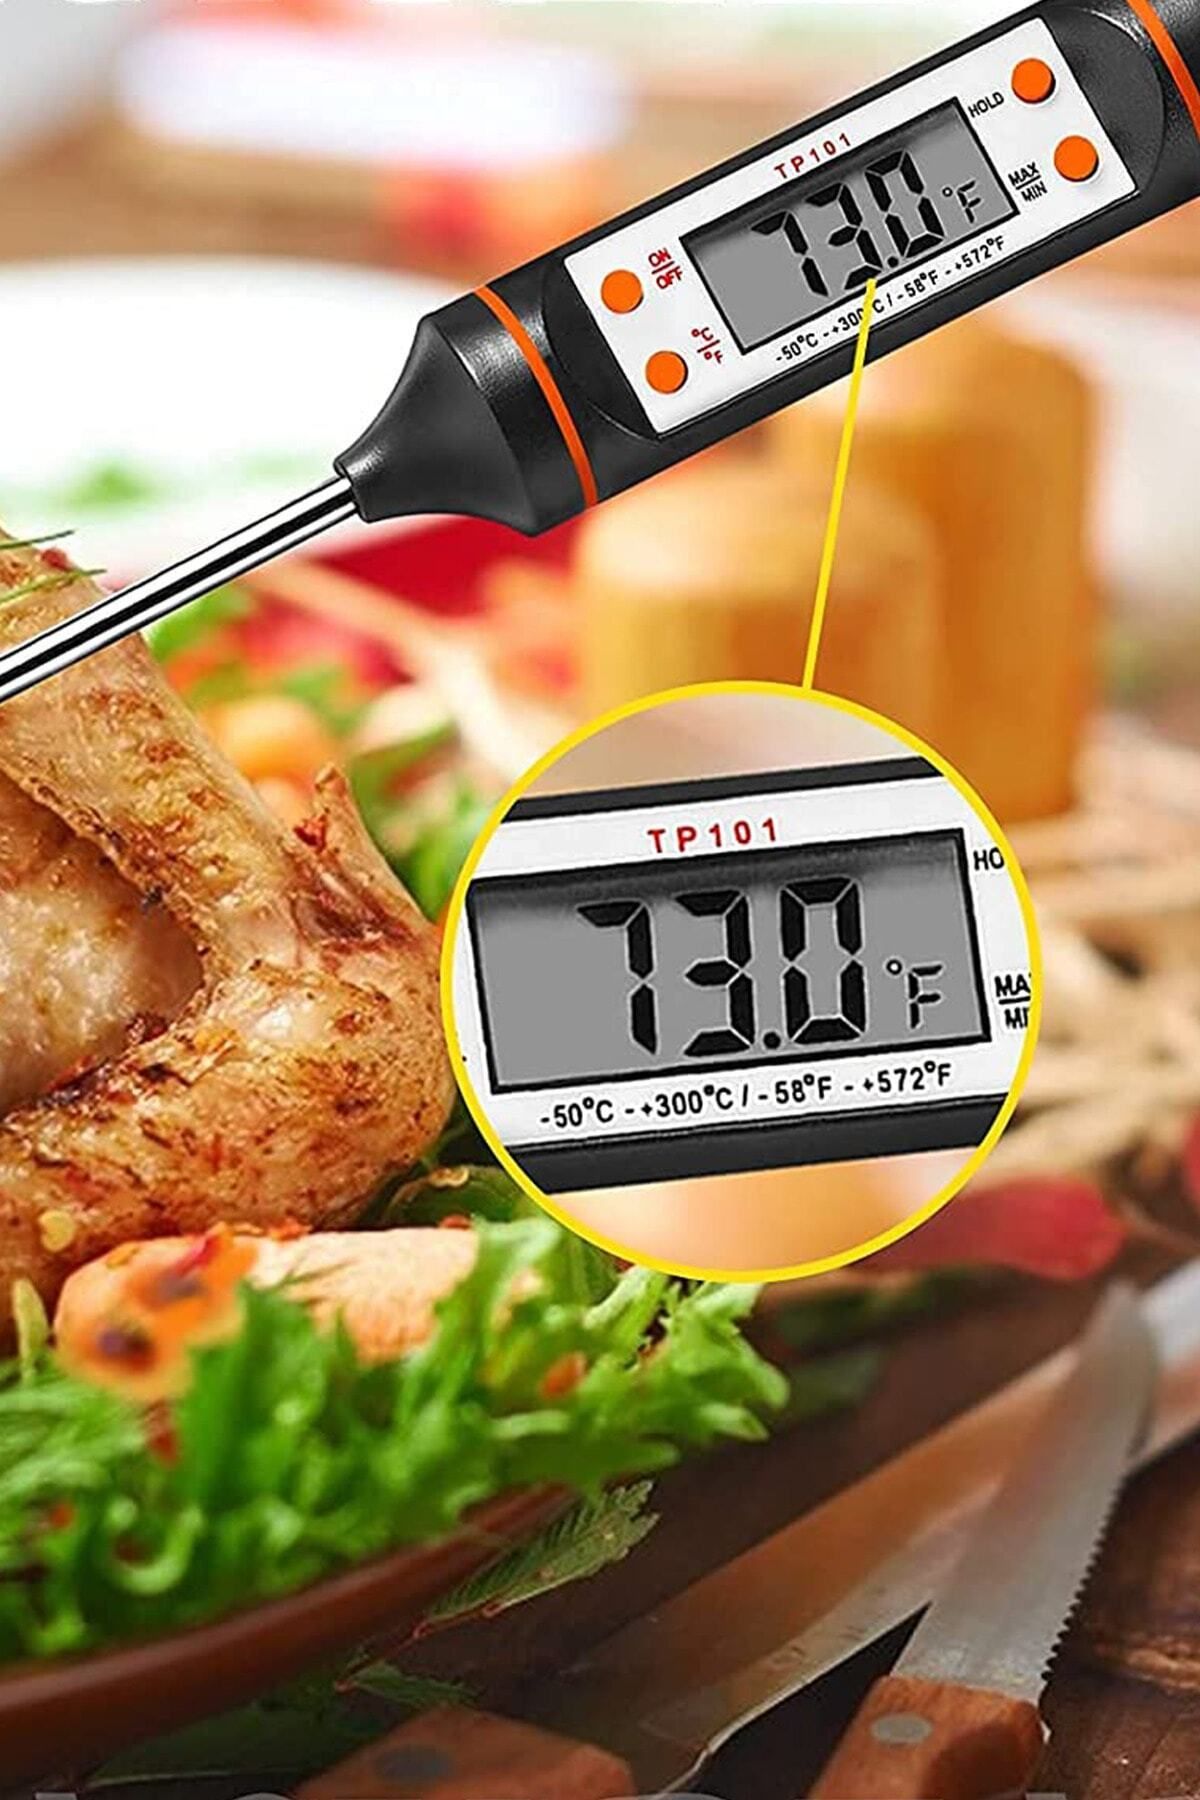 St Morritz 2 Yıl Elektronik Mutfak Aletleri Yemek Hazırlama Gereçleri Termometre Gıda Isı Ölçer Pasta Malzemel